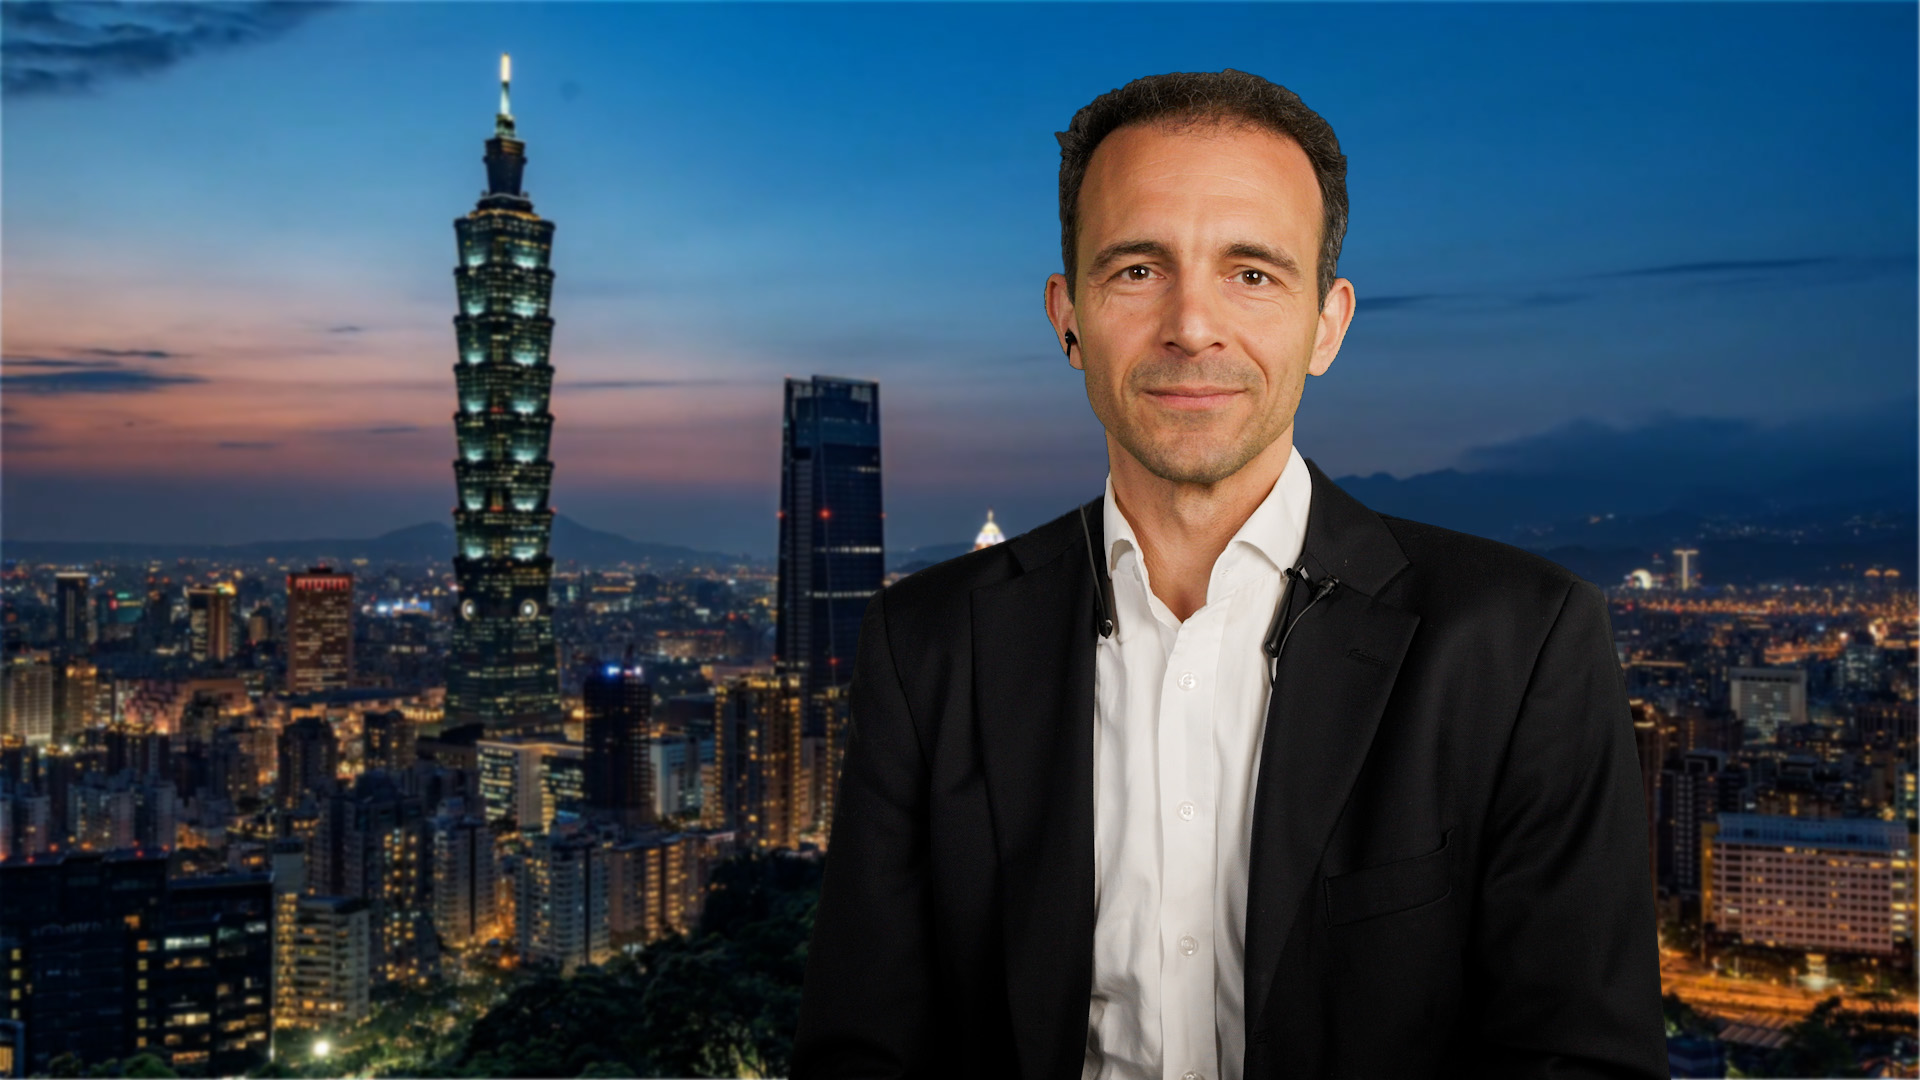 Fondsmanager Leopold Quell vor der nächtlichen Skyline Taipehs, der Hauptstand von Taiwan.